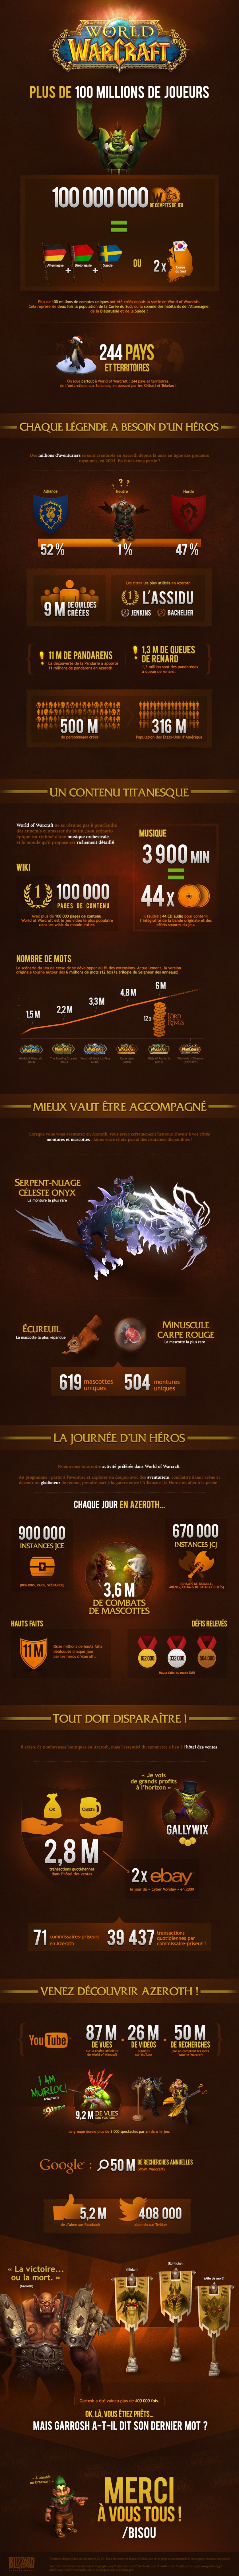 Infographie 10 ans  World of Warcraft - Blizzard - Janvier 2014